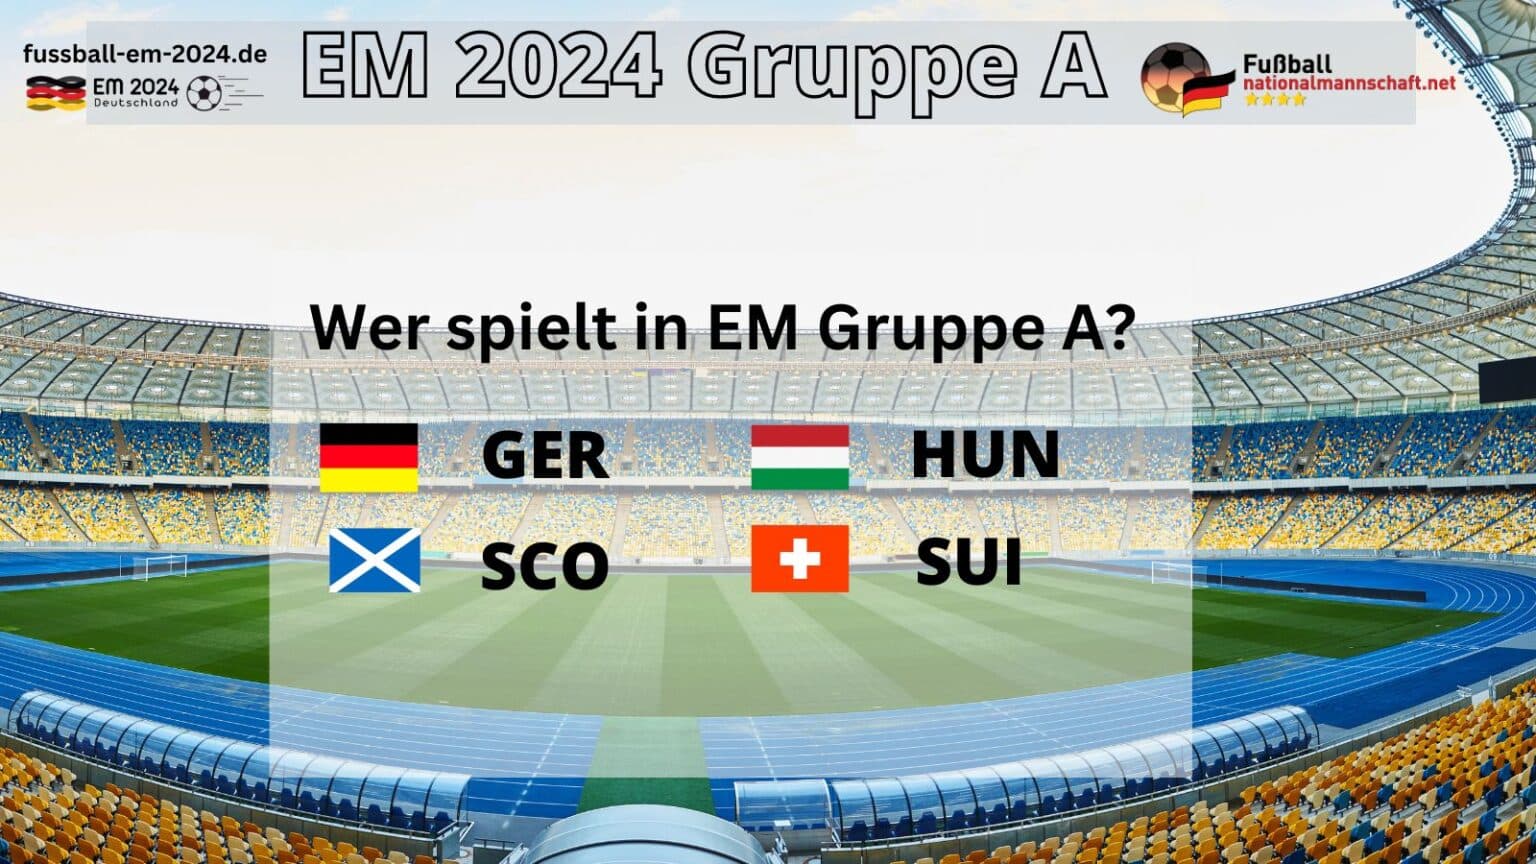 EM 2024 Gruppen * Vorrunde & Gruppenphase EM 2024 * EM Spielplan